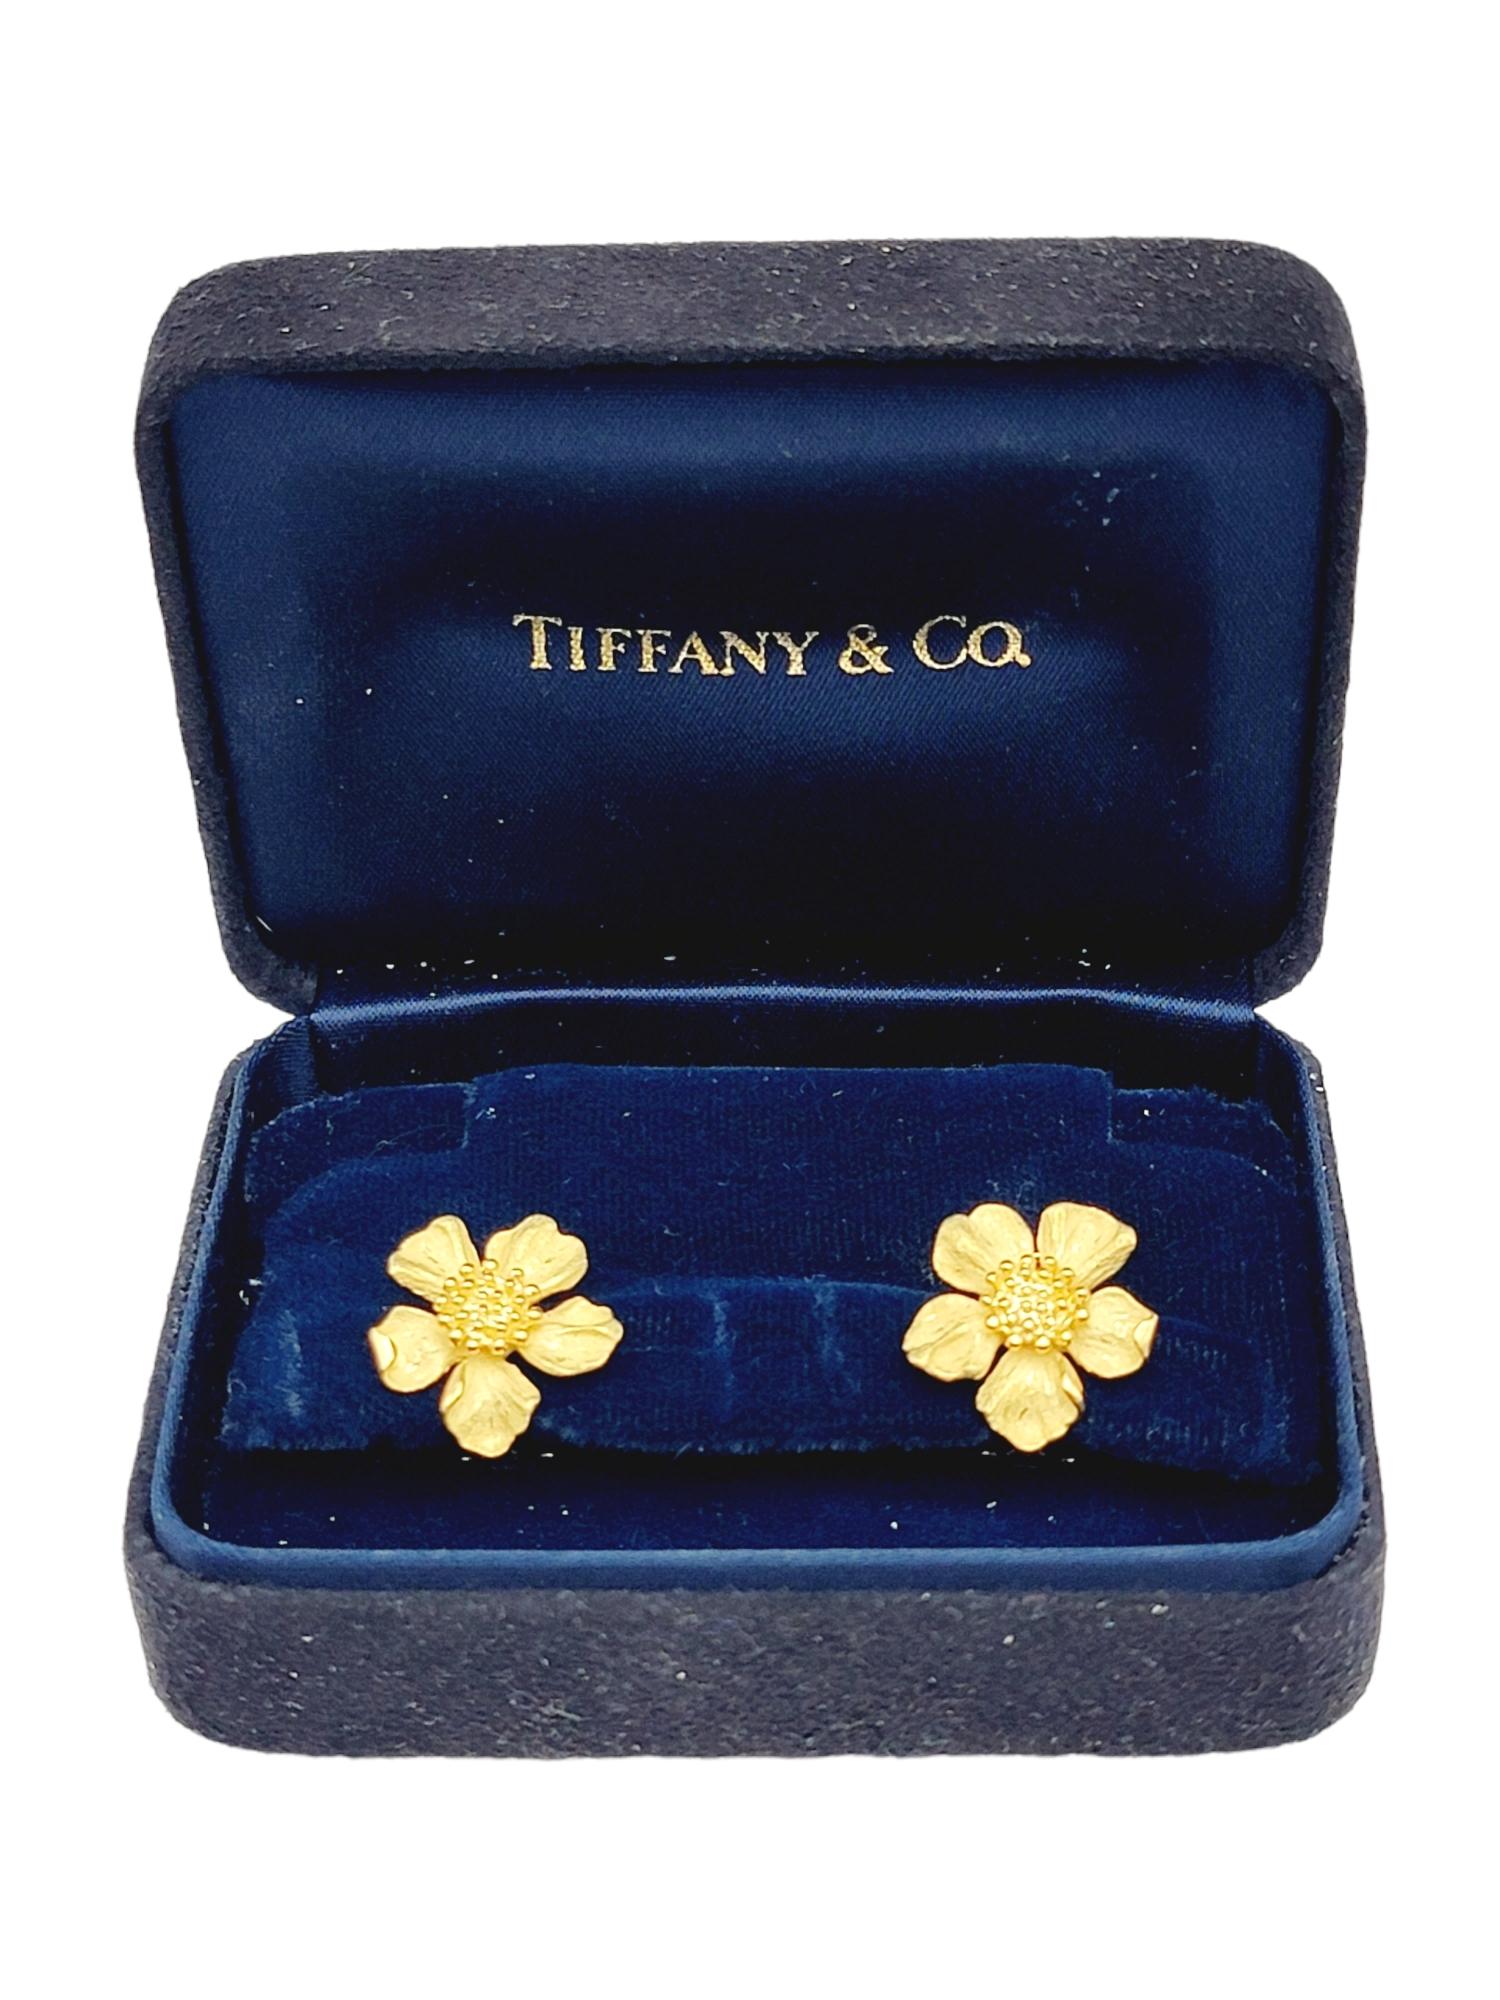 Tiffany & Co. Vintage 18 Karat Yellow Gold 3D Dogwood Flower Pierced Earrings 6